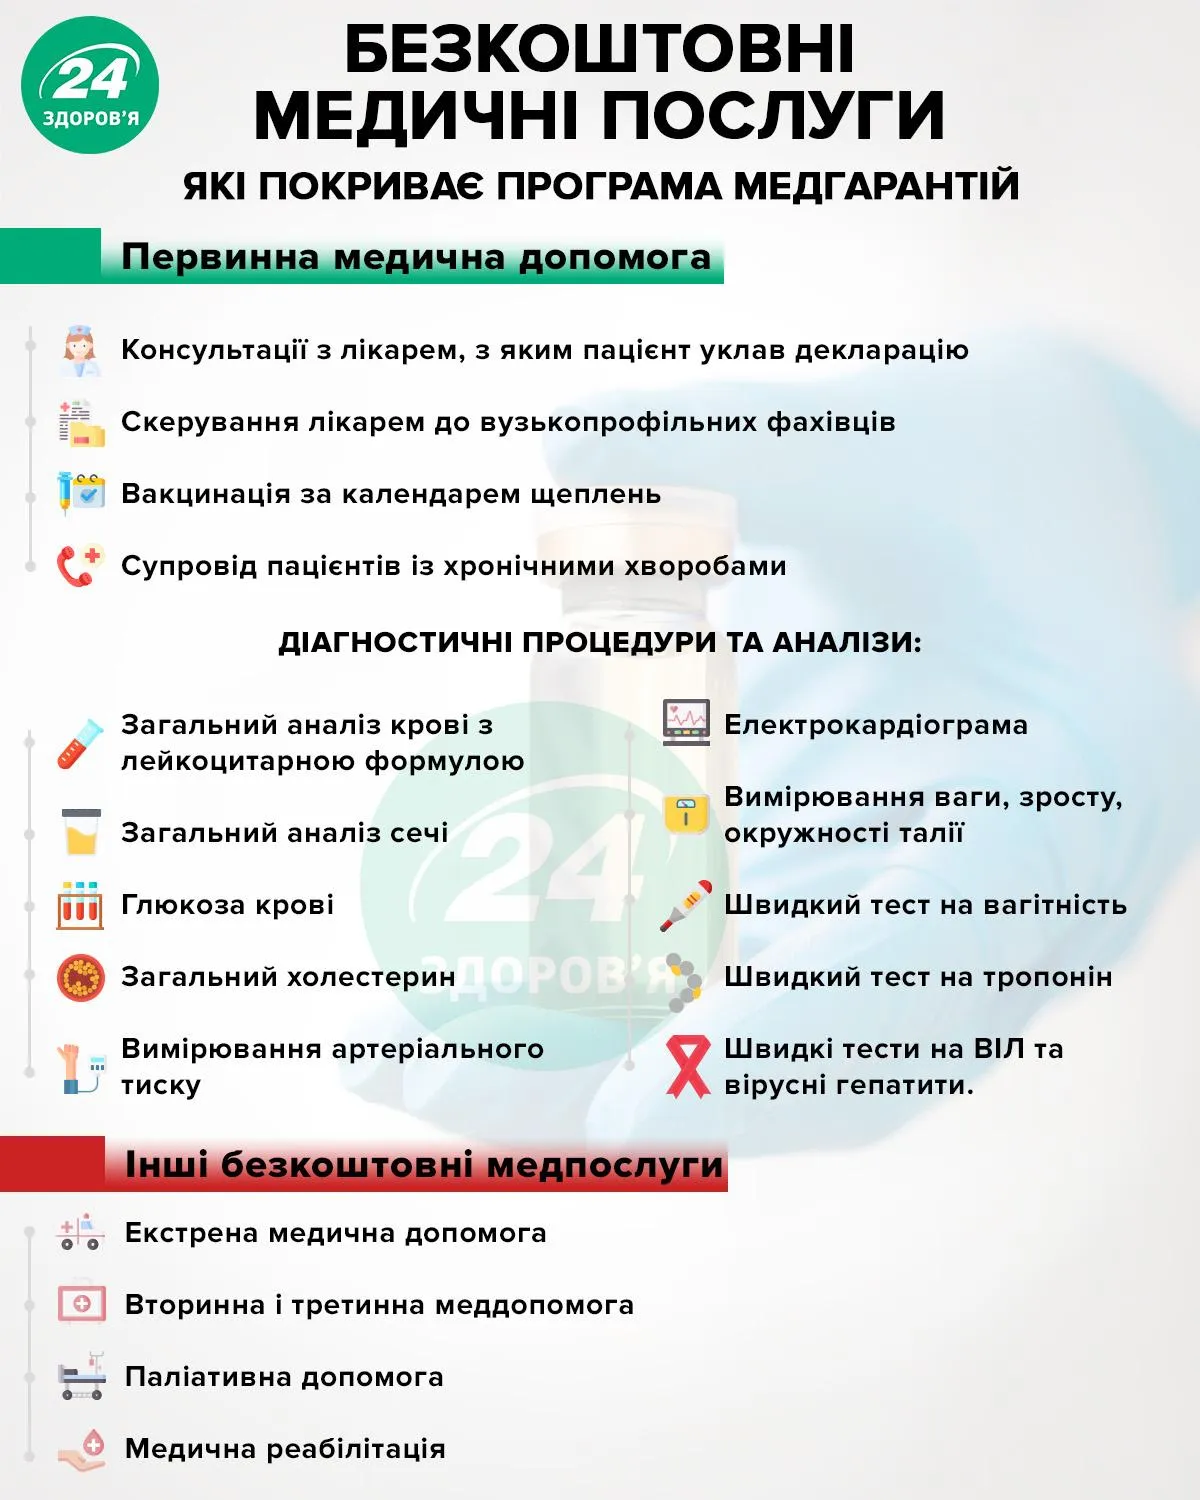 бесплатные медицинские услуги украина